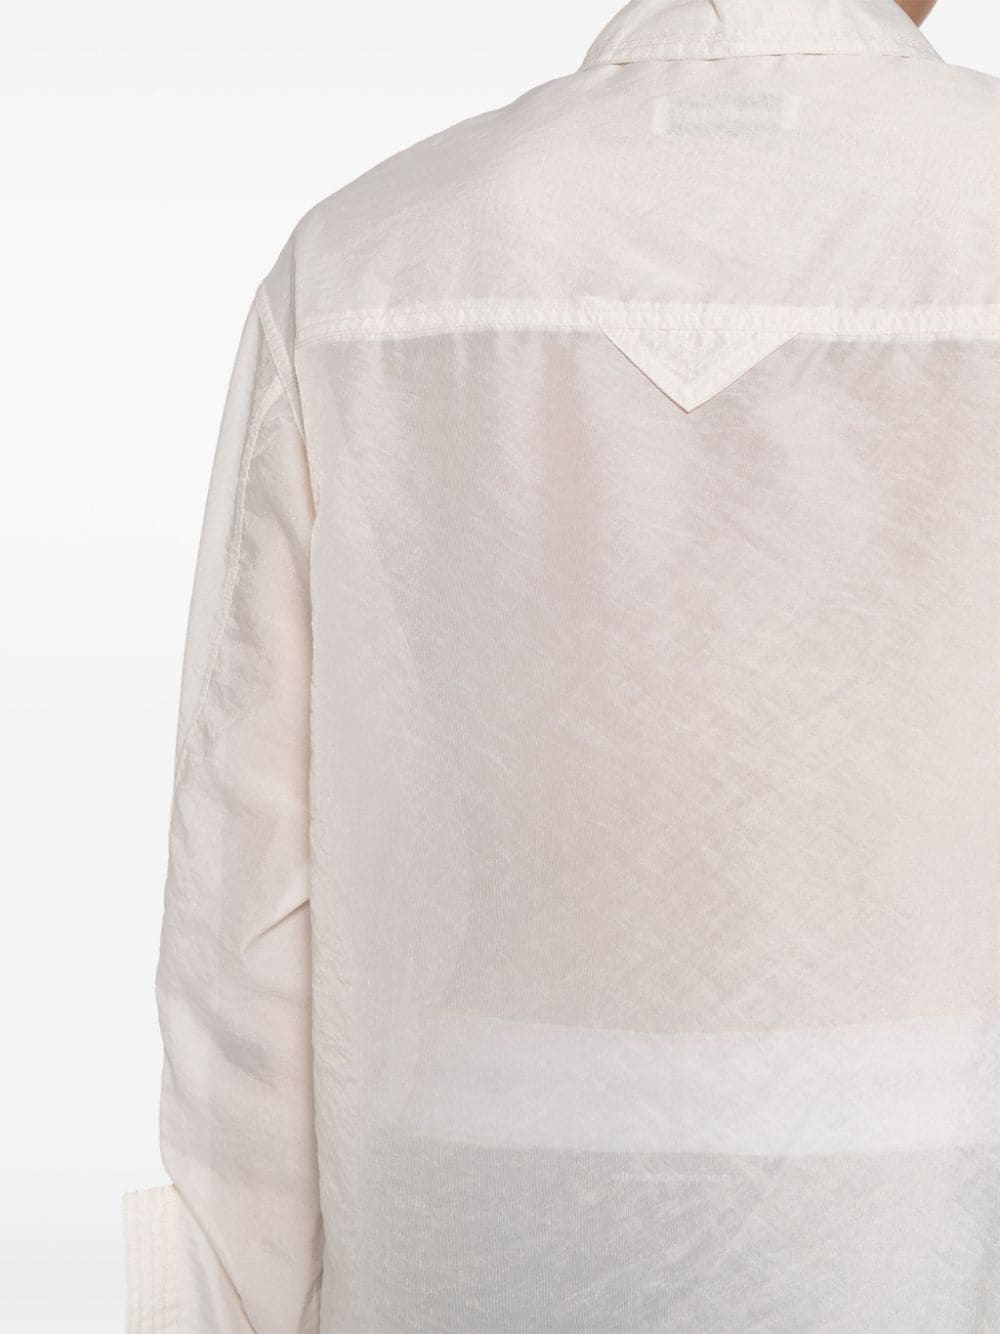 semi-sheer buttoned shirt - 5